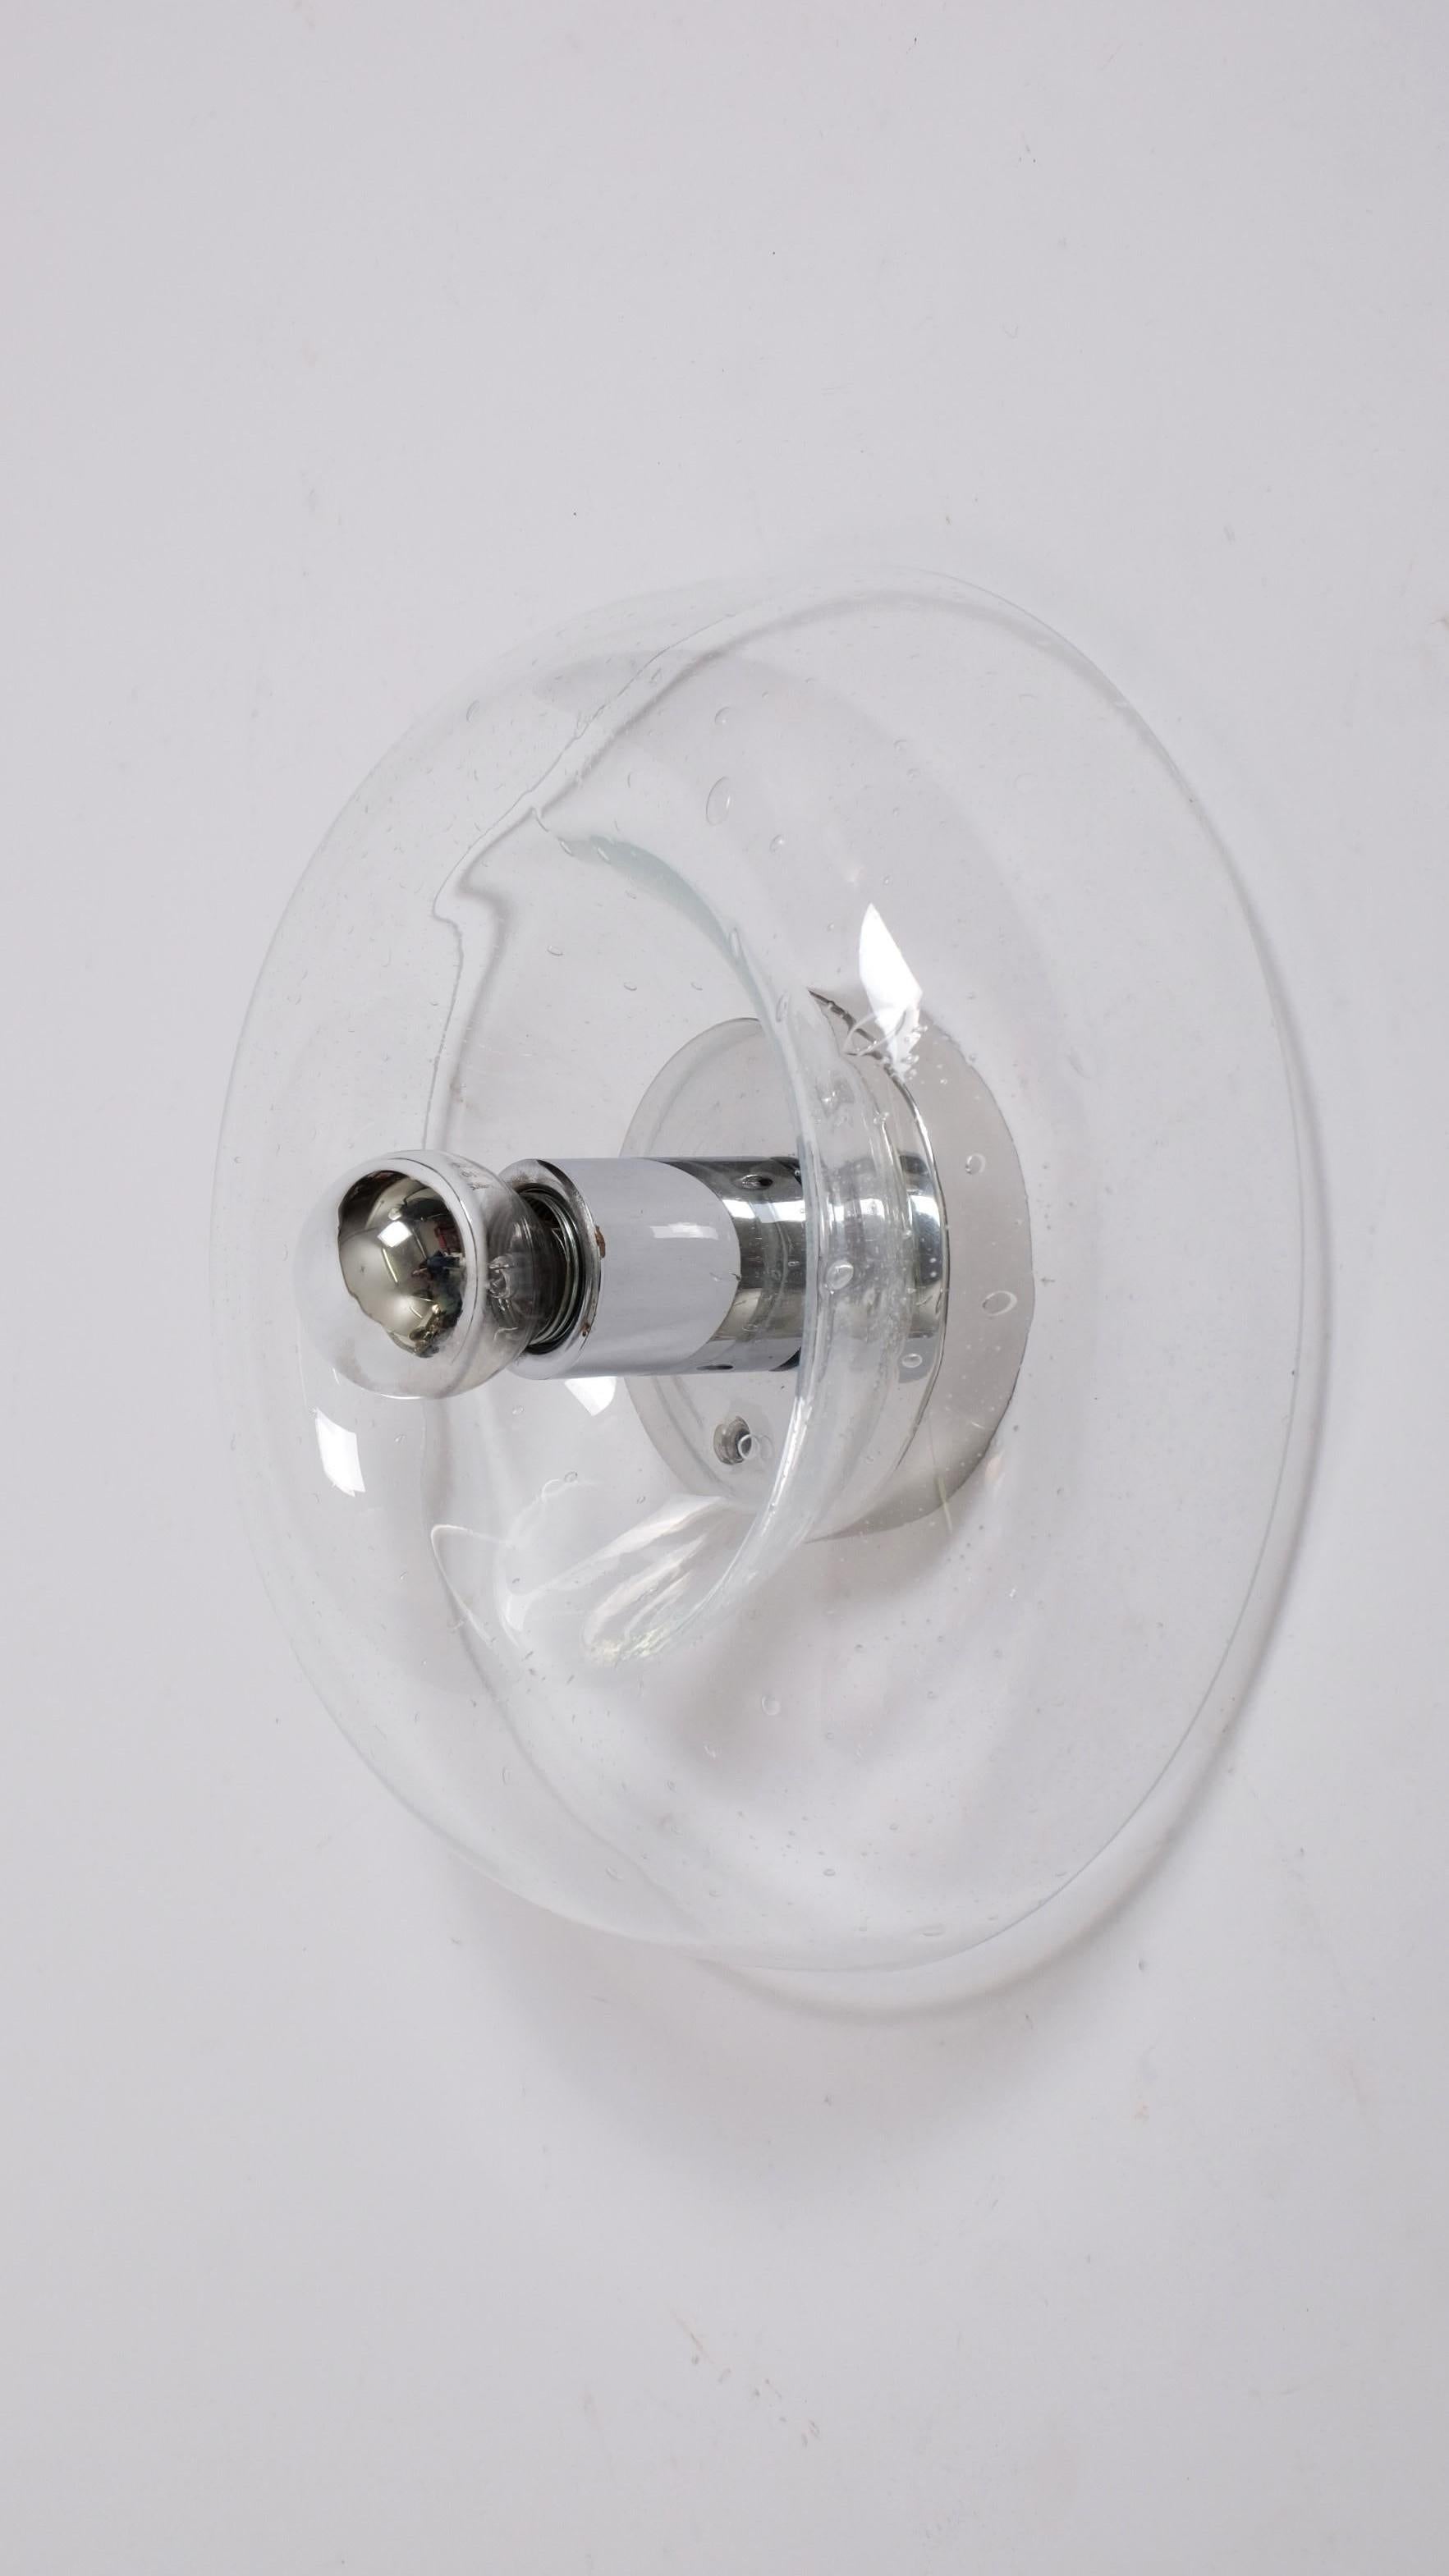 Atemberaubende Wandleuchte oder Deckenlampe aus den 1970er Jahren von J.T. Kalmar, Österreich.

Sie besteht aus einem verchromten Metallbügel, der einen donutförmigen Glasschirm mit eingeschlossenen Blasen hält.

Das Stück ist in einem wunderbaren